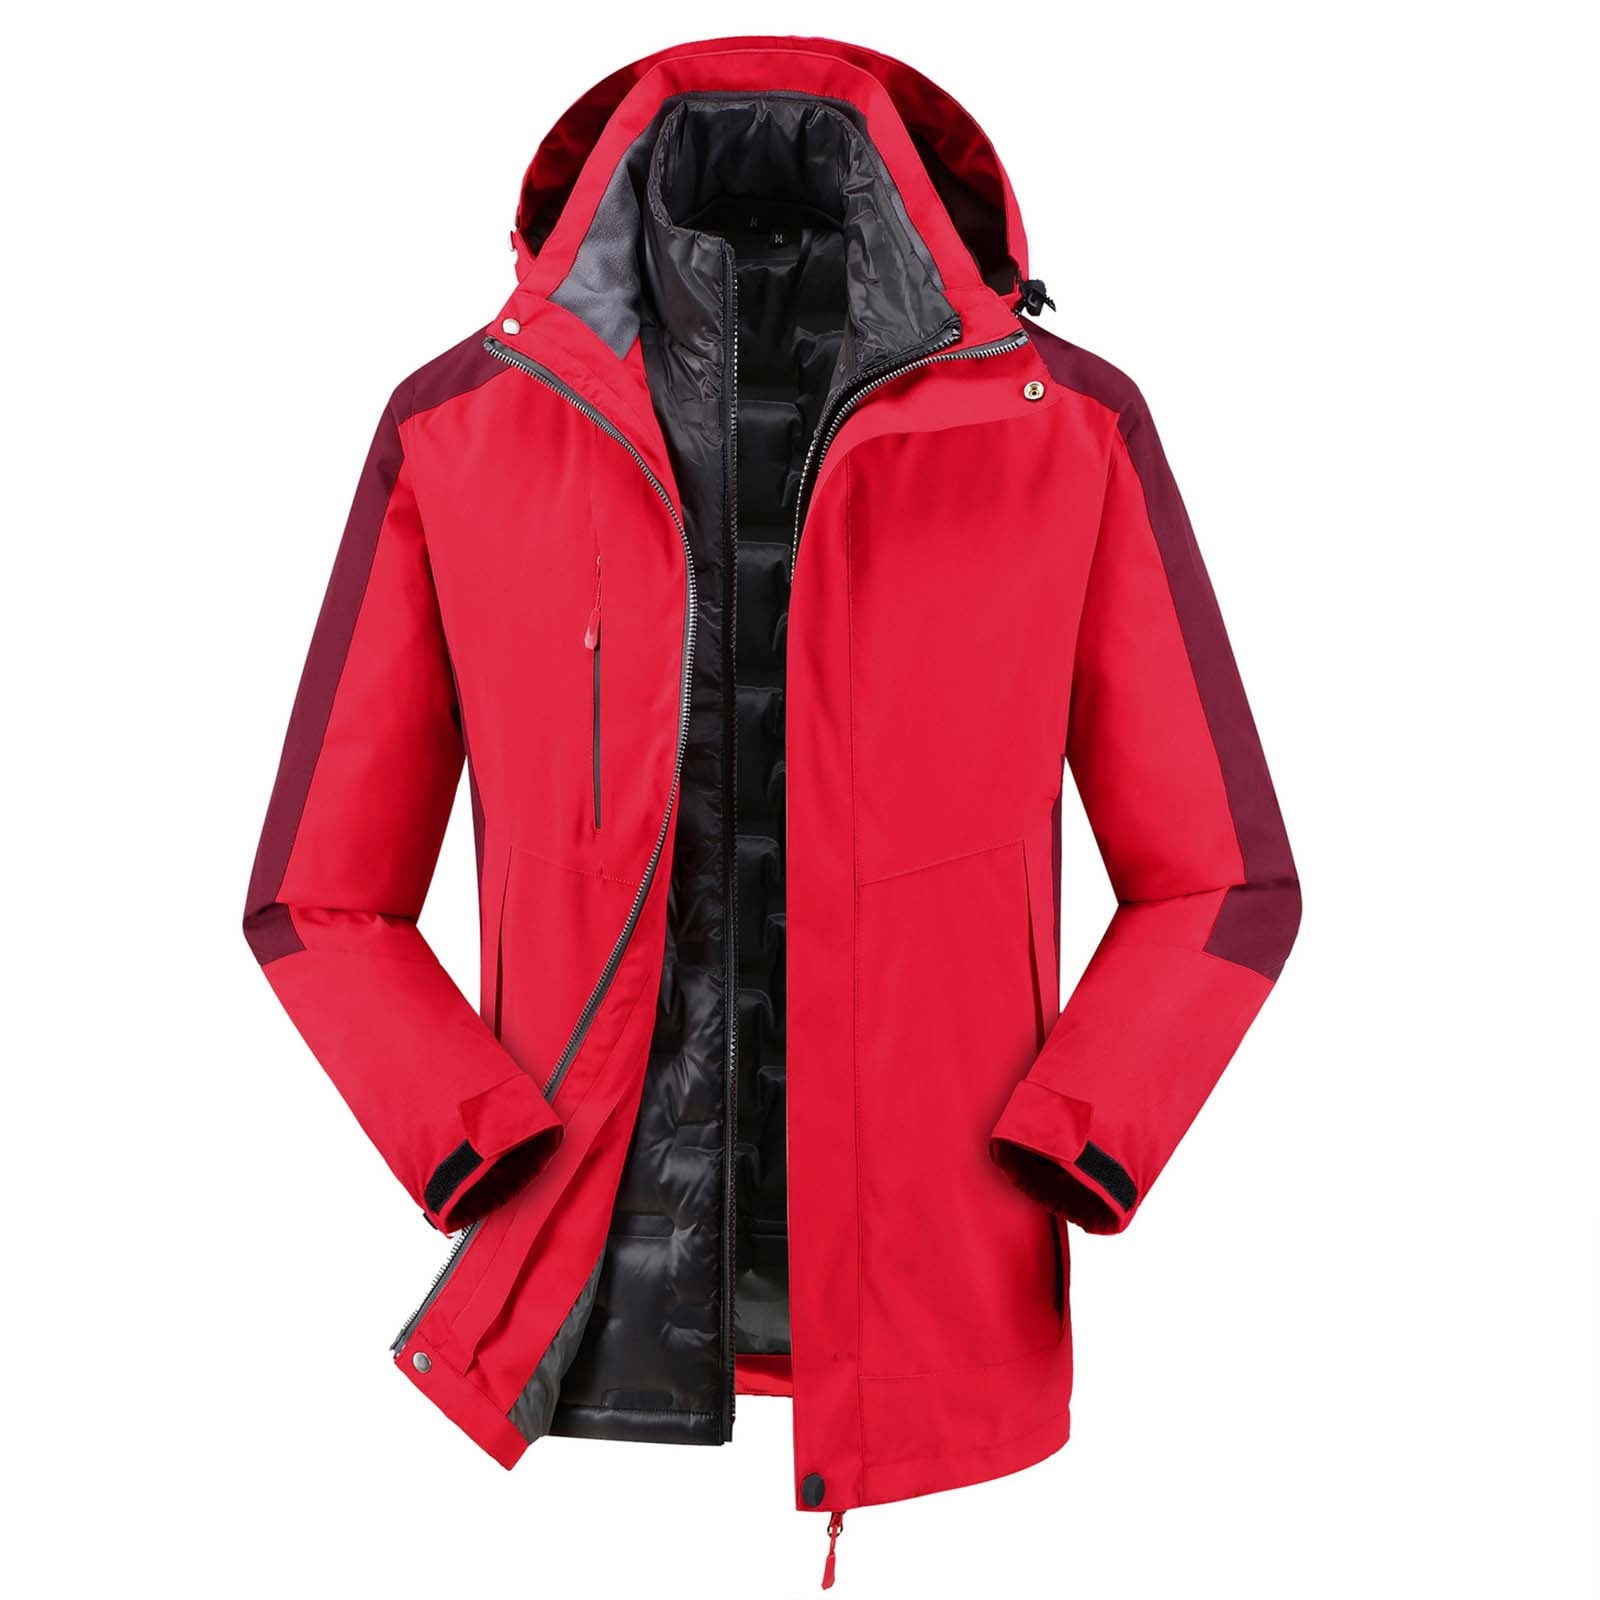 Men's Winter Outwear Thicken Fleece Jacket - Hiking Skiing Coat